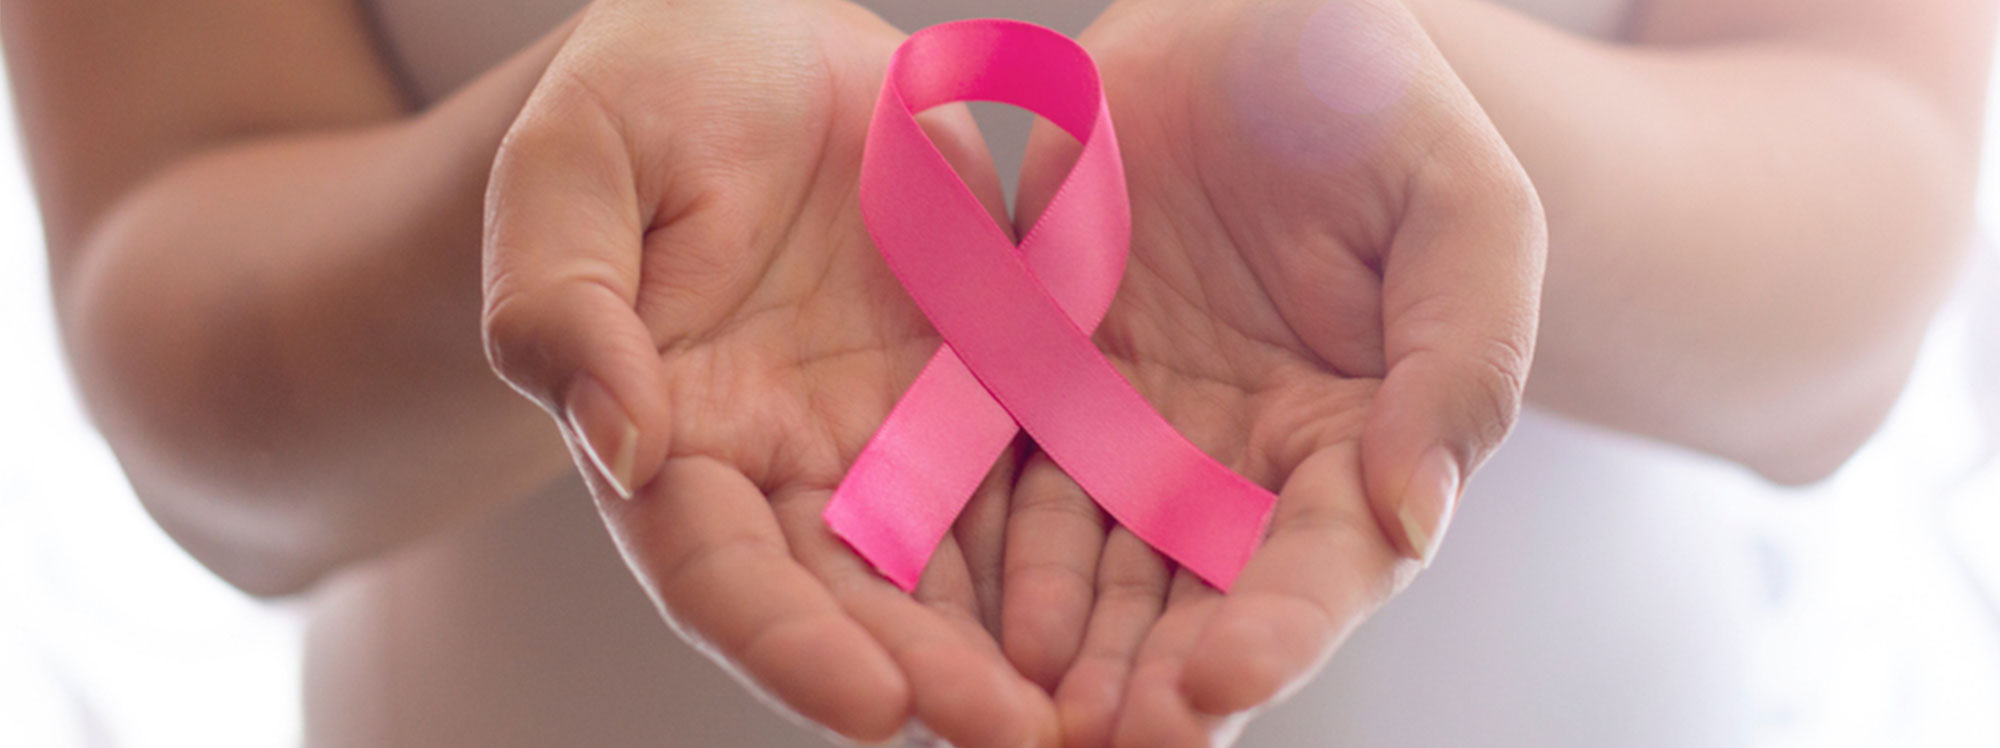 Radioterapia intraoperatoria: alternativa ante el cáncer de mama